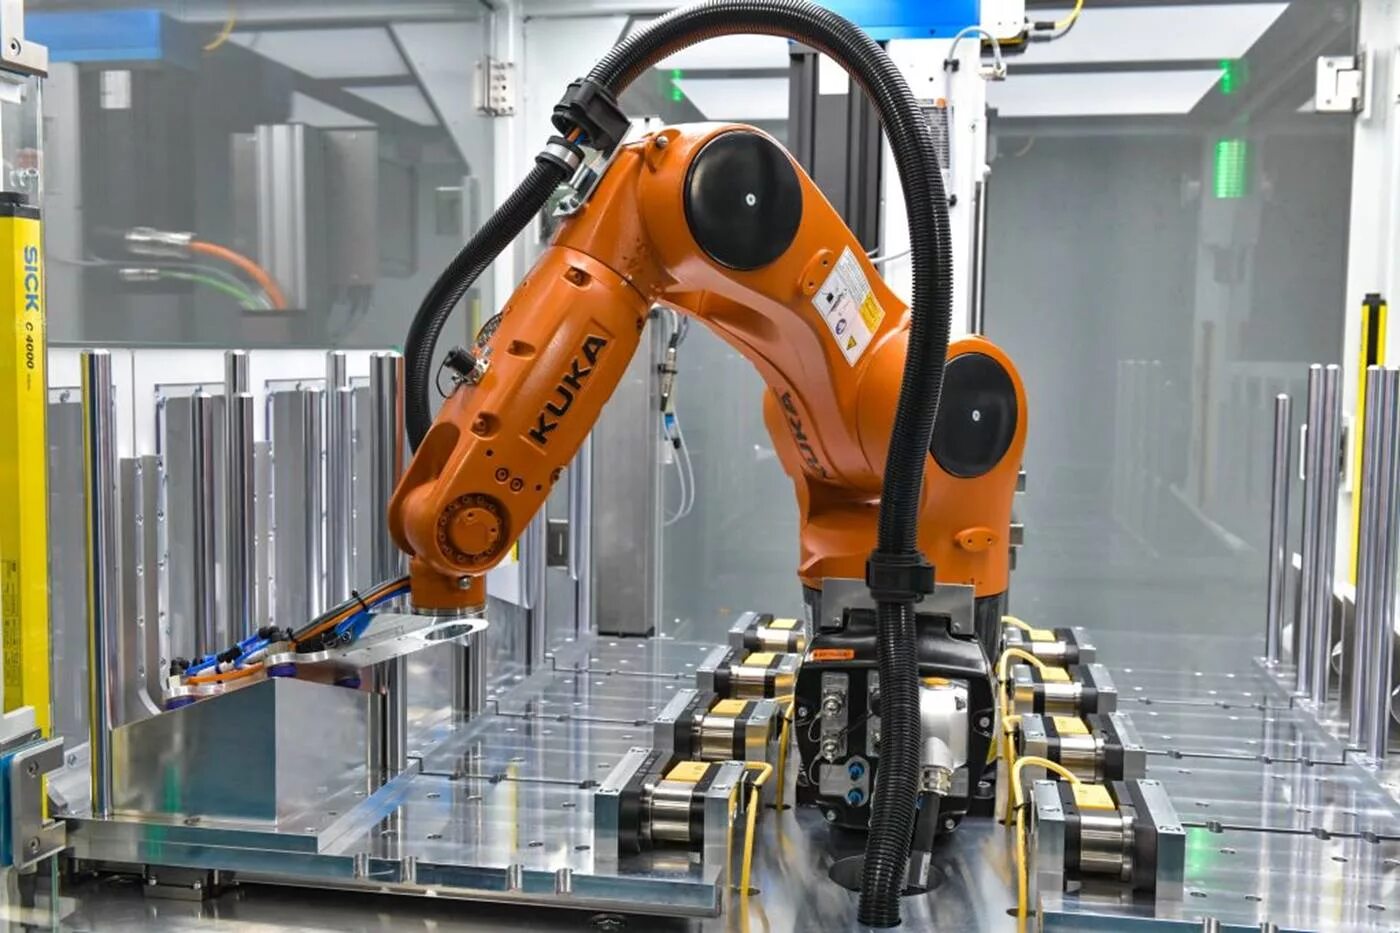 Автоматизация и роботизация технология 8 класс. Kuka kr AGILUS. Kuka Robot конвейер. Первый промышленный робот kuka. Роботизированный манипулятор kuka AGILUS.